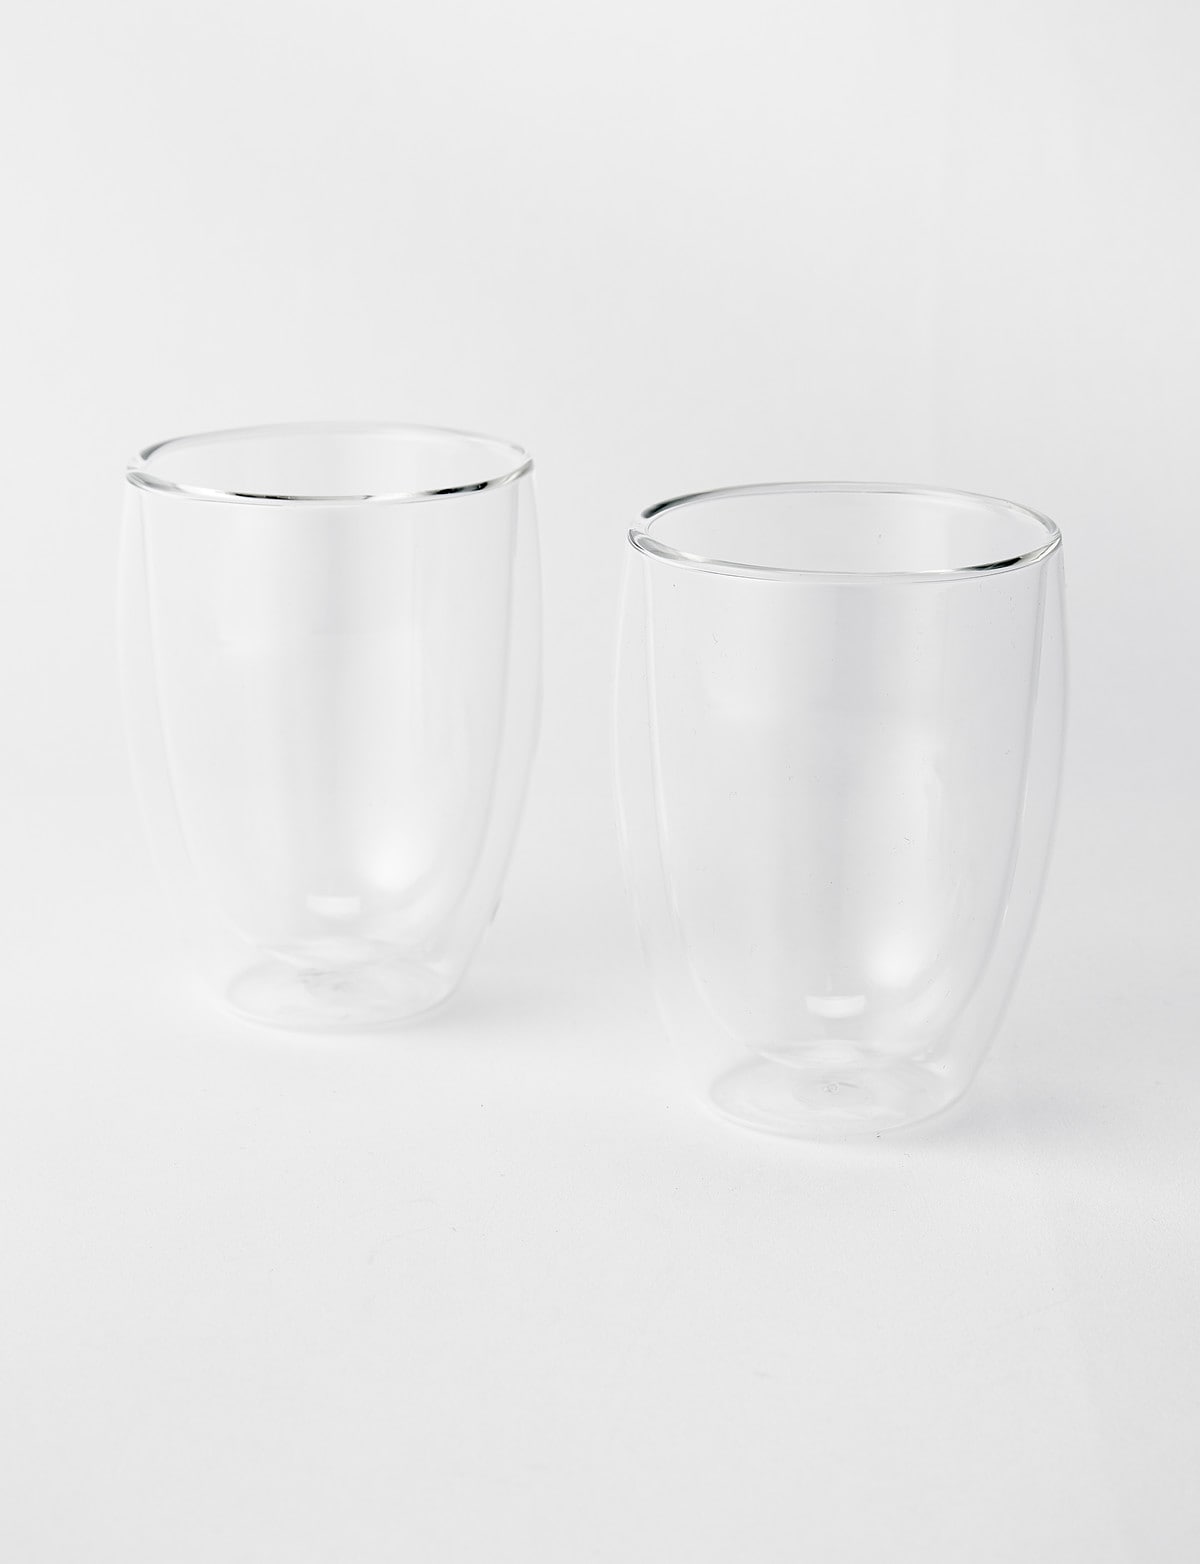 Bodum Pavina Double Walled Drinking Glasses - Set of 2